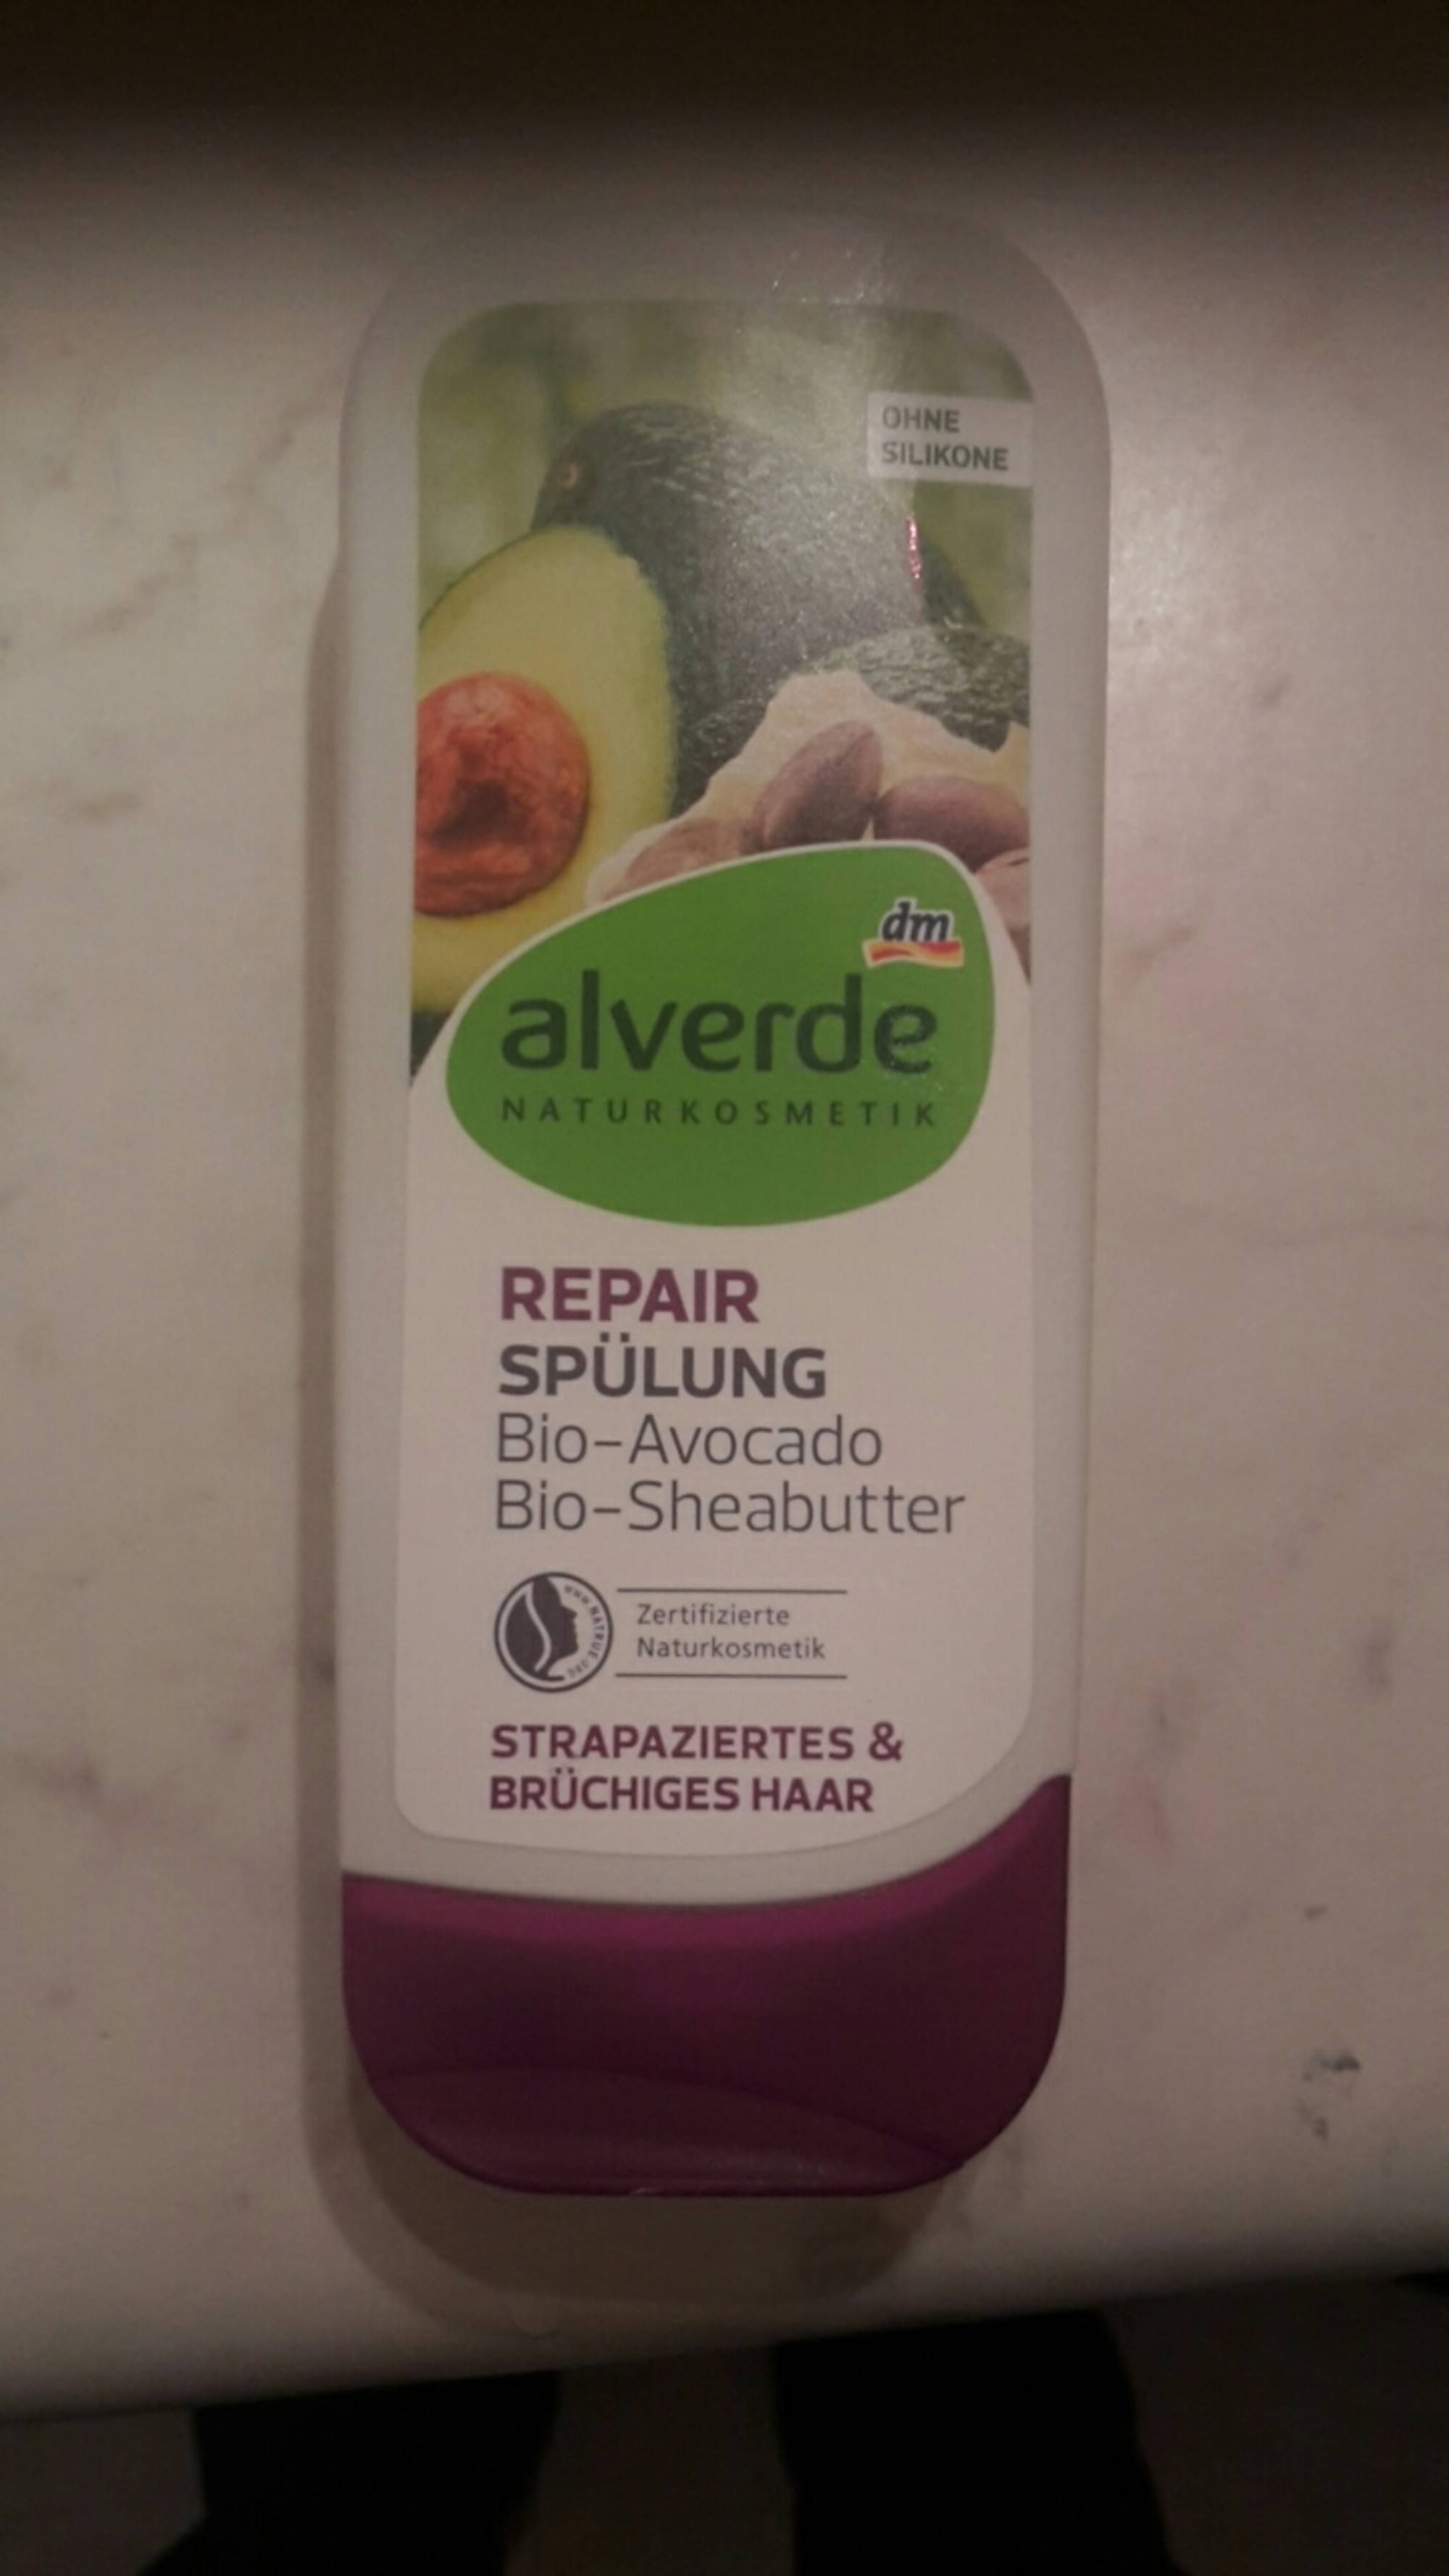 DM - Alverde Repair Spülung Bio-Avocado